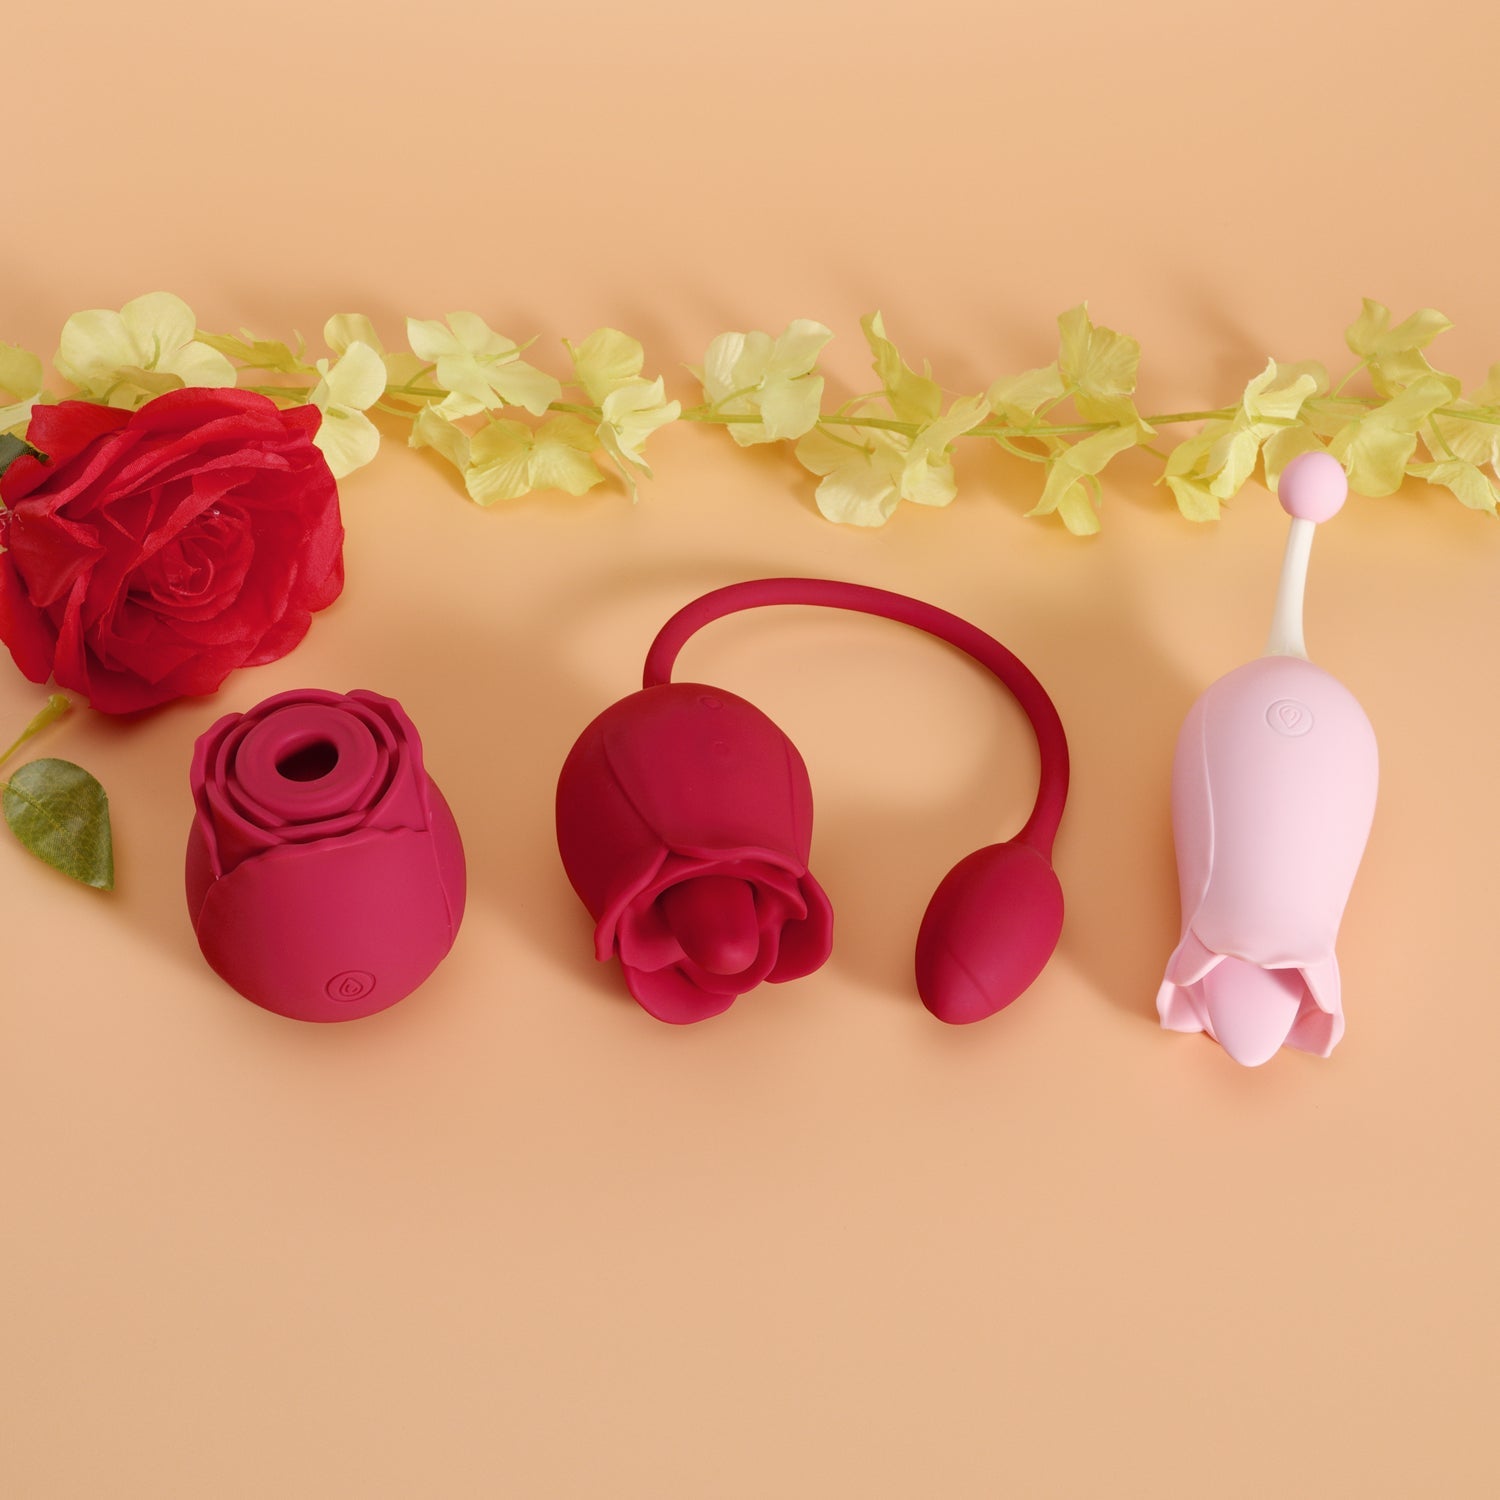 The Rose Toy Boutique Bundle